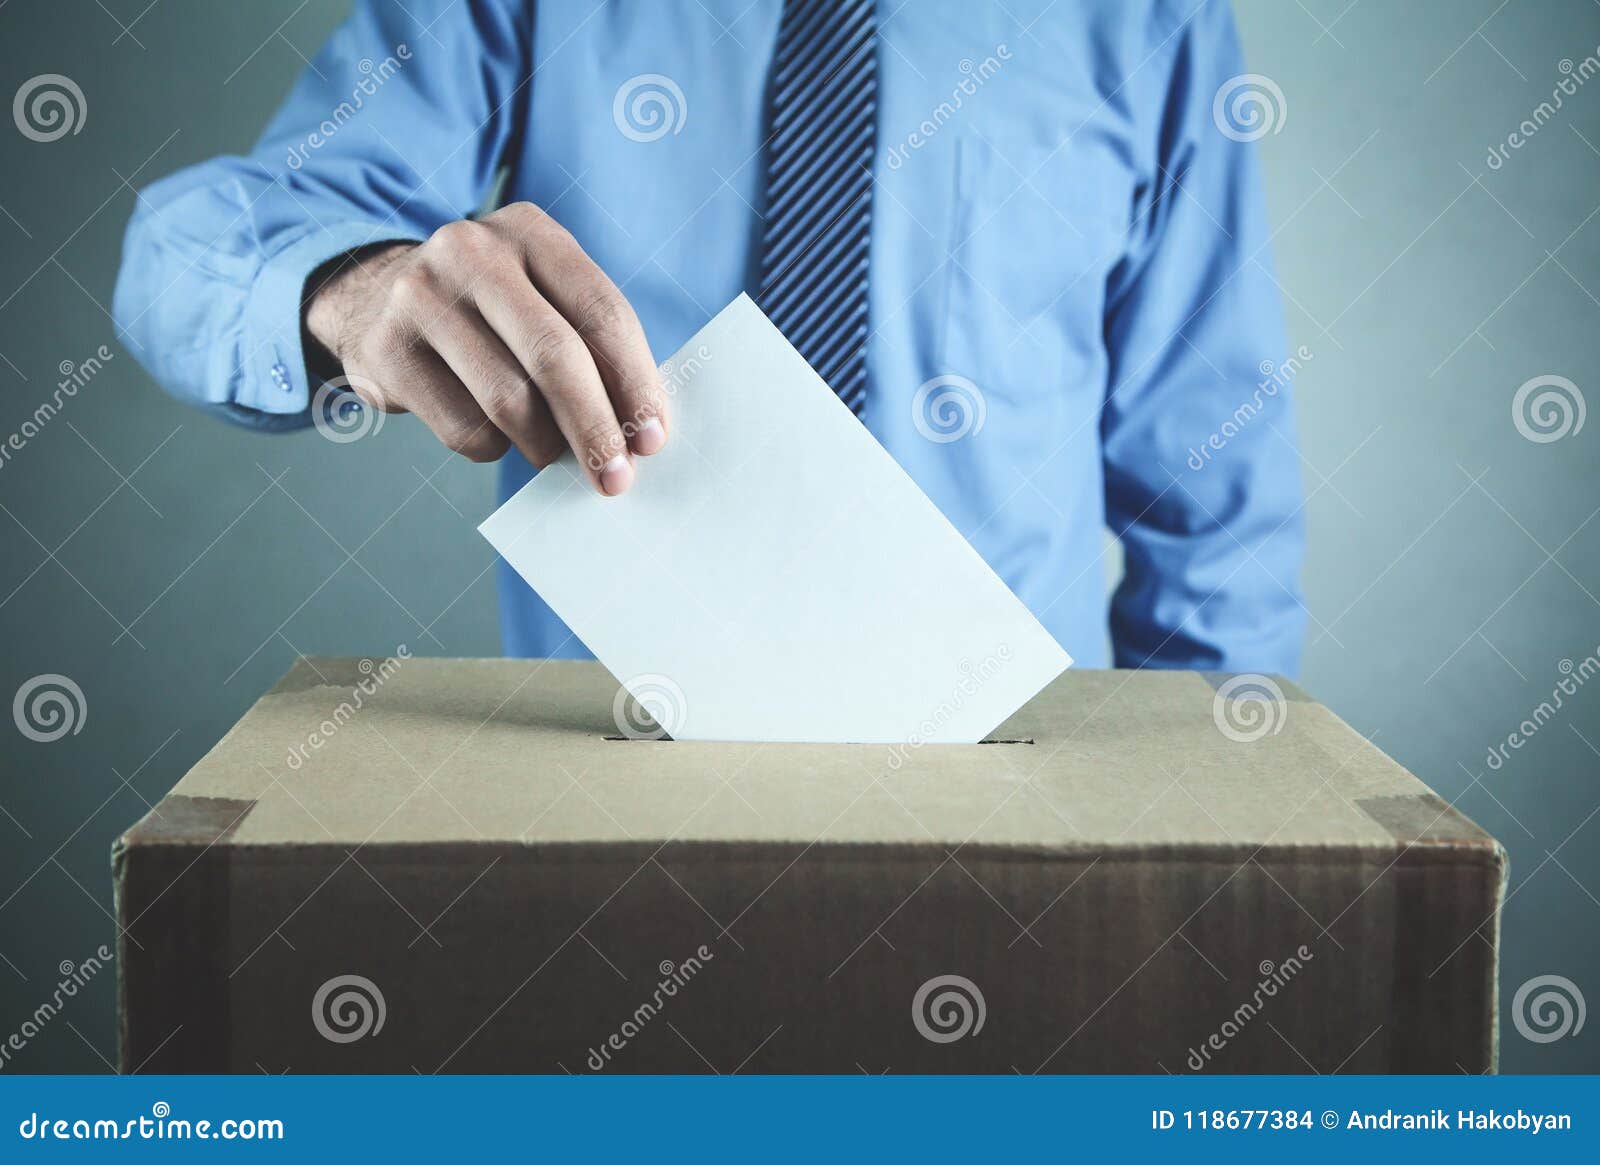 Homme votant à l'urne  Concept d'élection et de démocratie